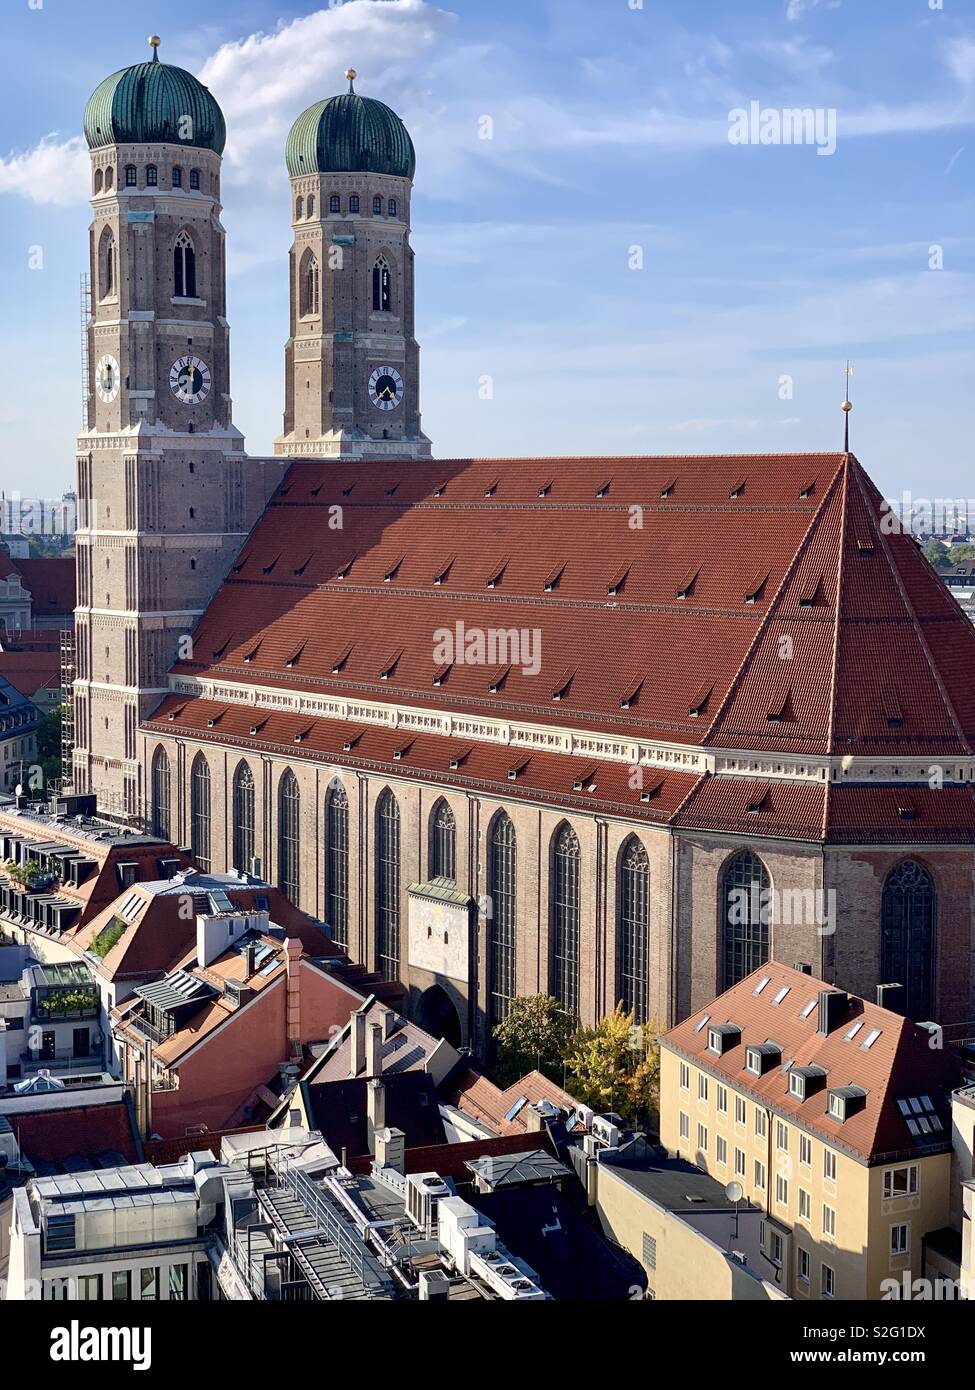 Frauenkirche, Munich, Germany. Stock Photo